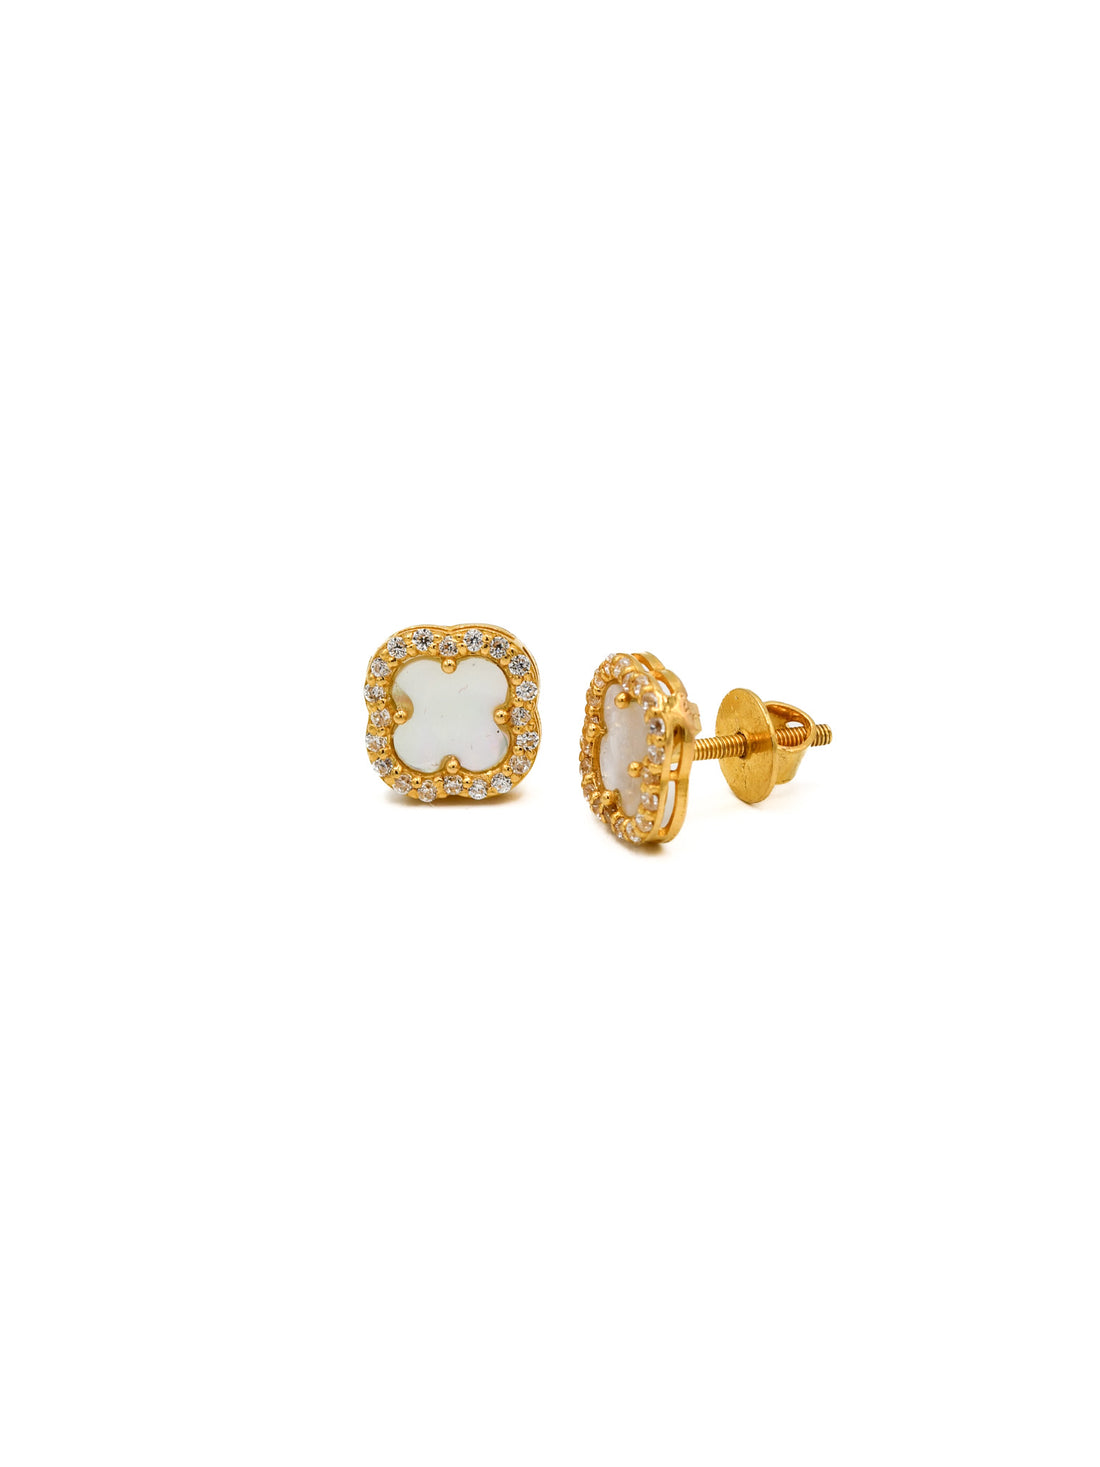 22ct Gold CZ Stud Earring - Roop Darshan